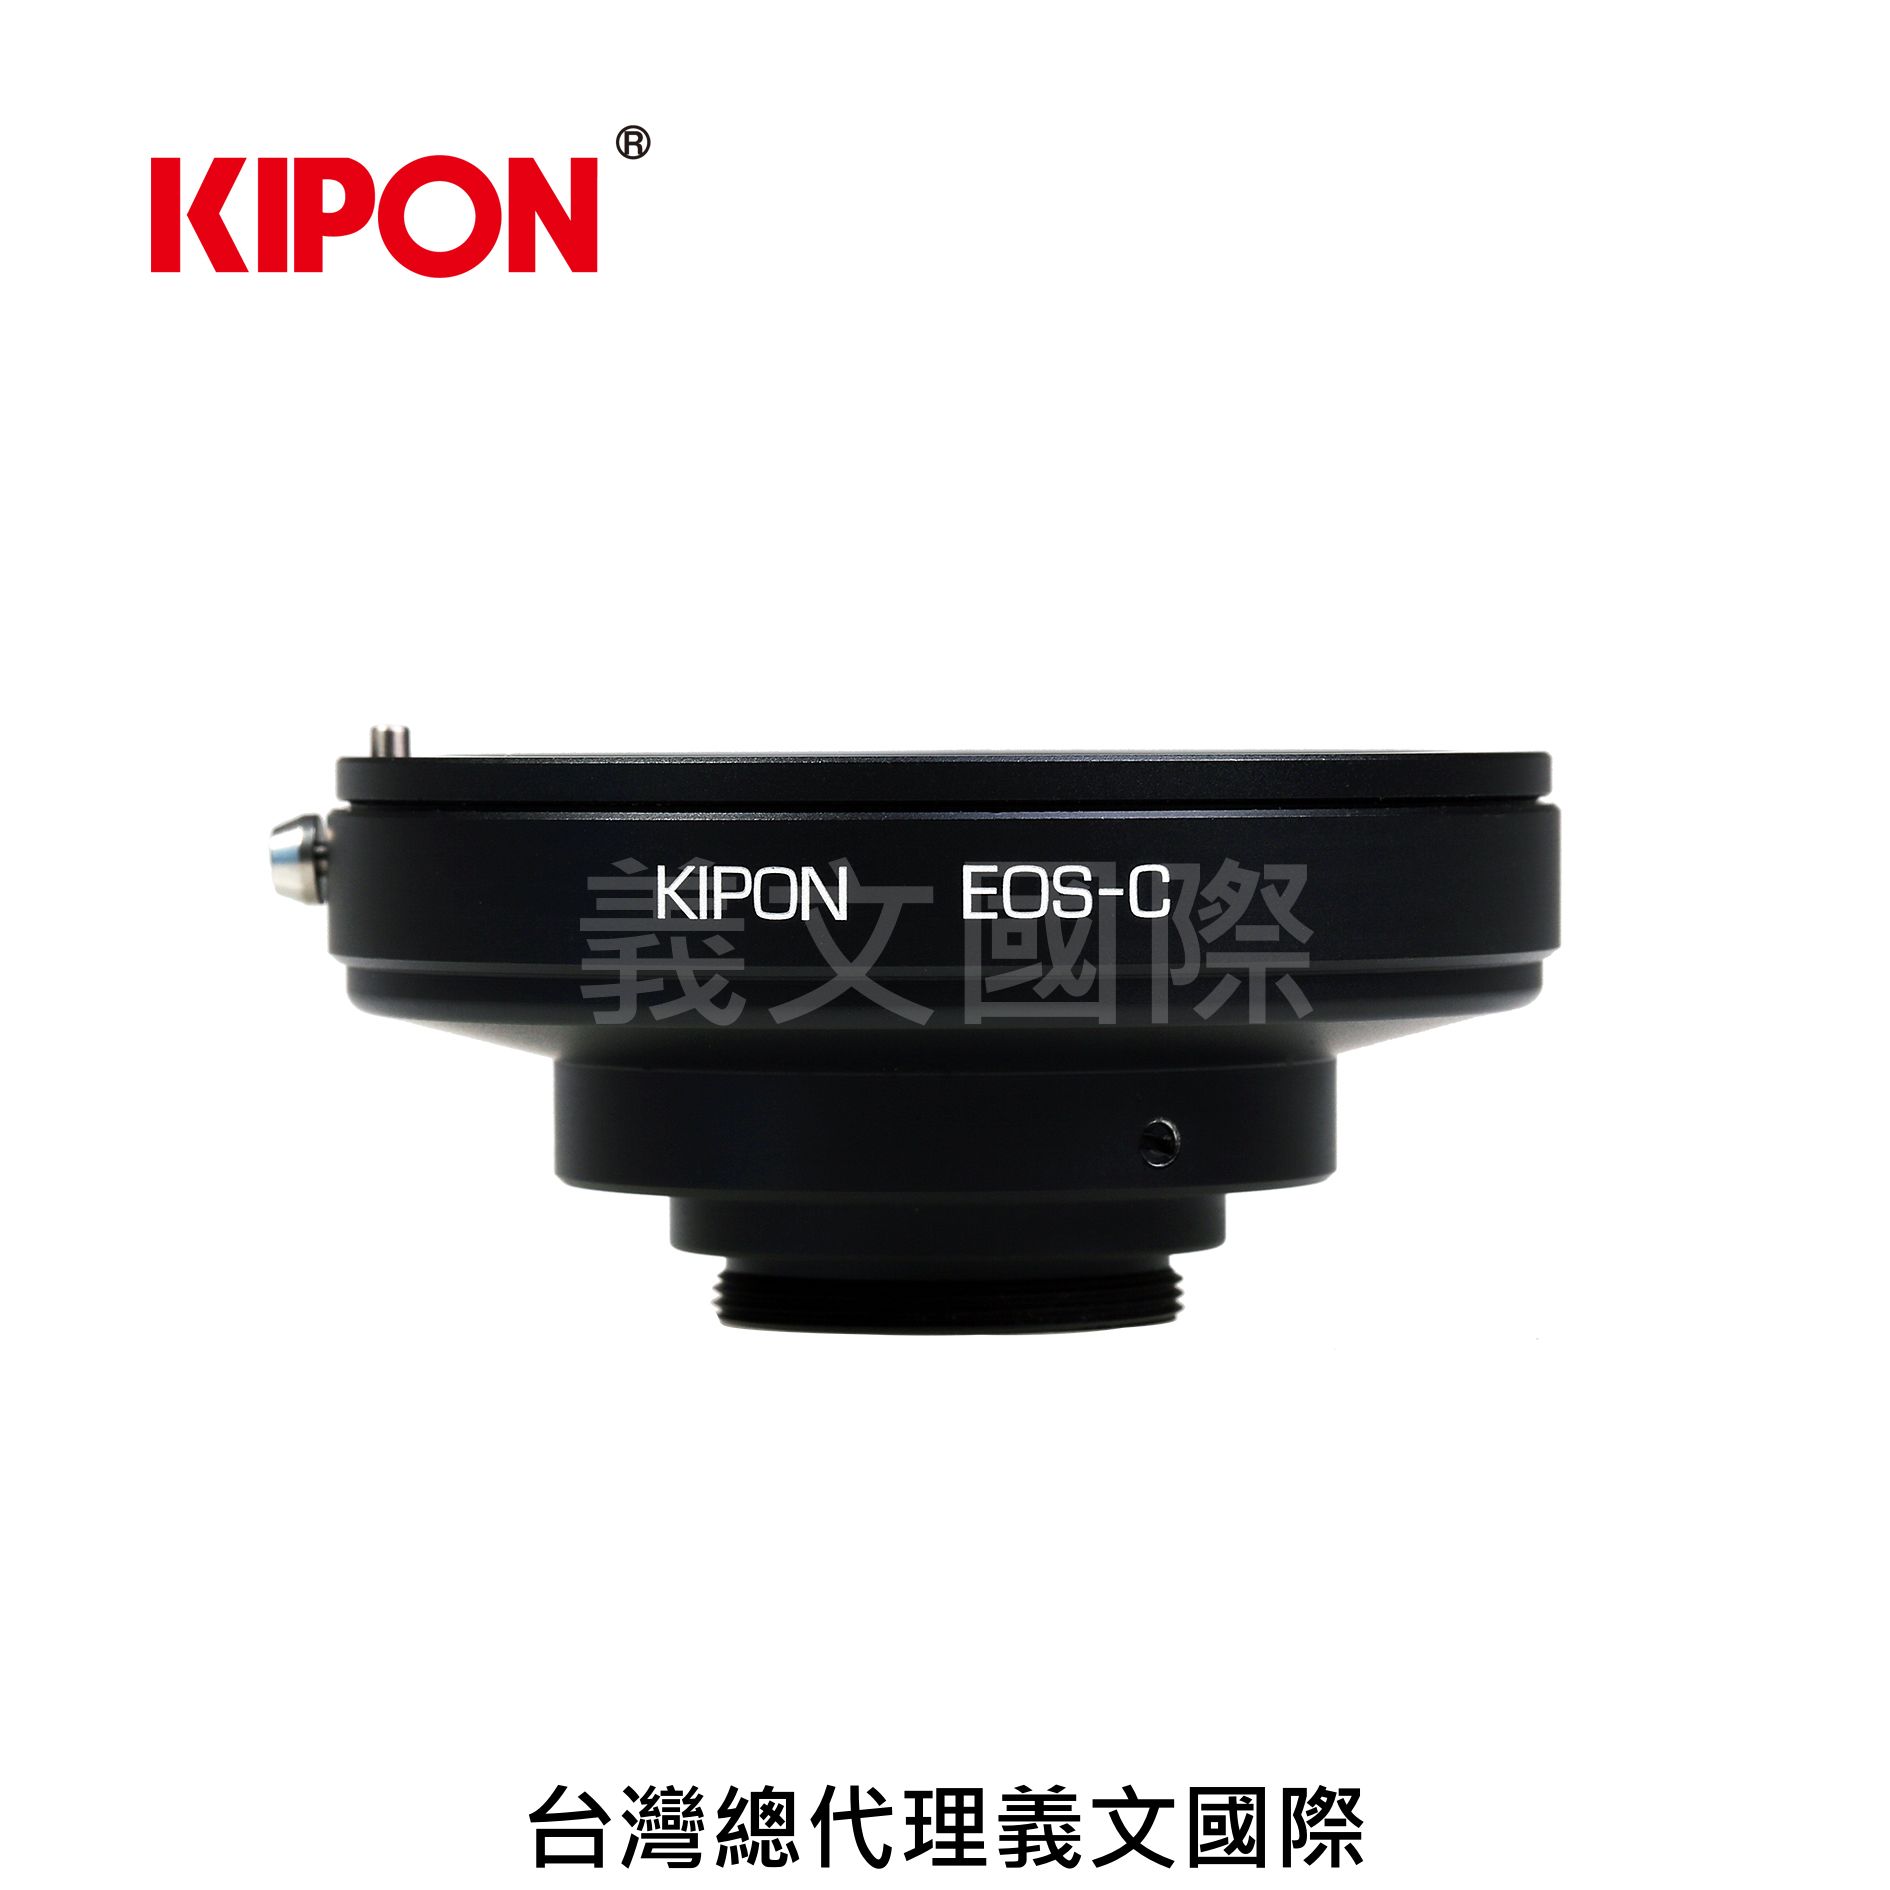 Kipon轉接環專賣店:CANON EOS-C(C-Mount,顯微鏡,望遠鏡,Canon EF,CCD,工業用攝影機,IR紅外線攝影機,CCTV監視攝影機,FUJINON)